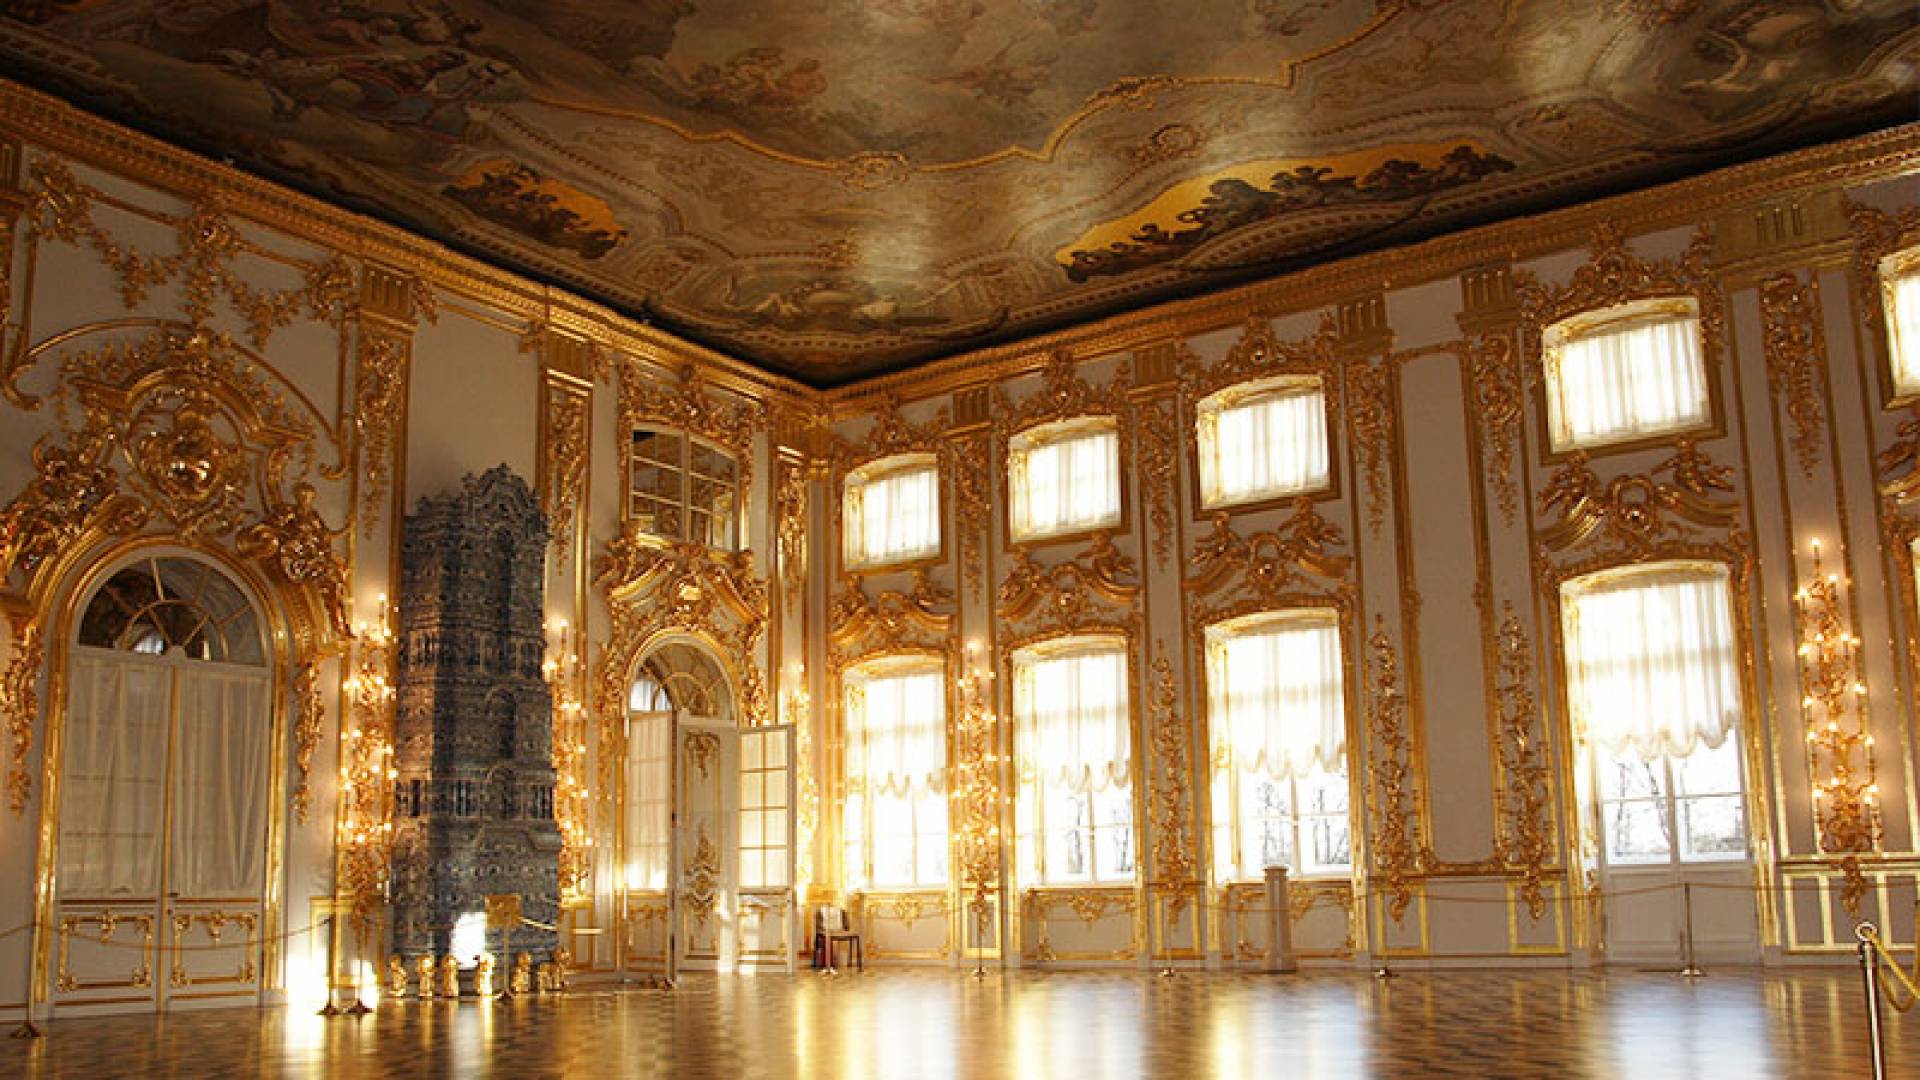 TSARSKOYE SELO, Catherine Palace Interior